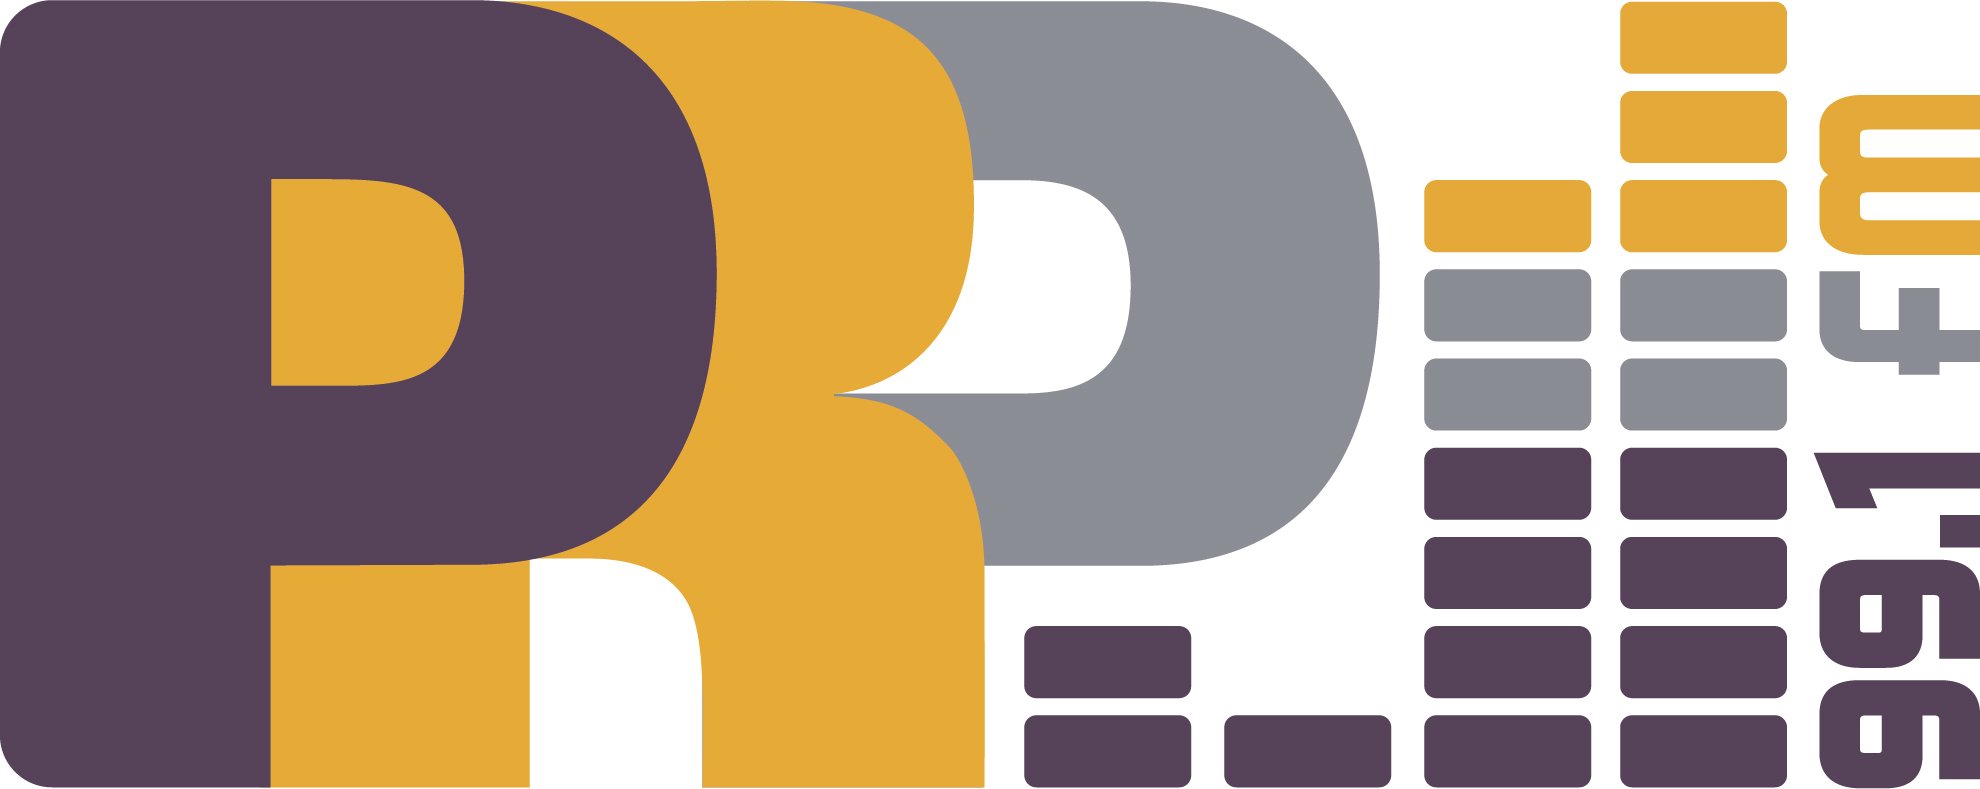 PRP-logo.jpg